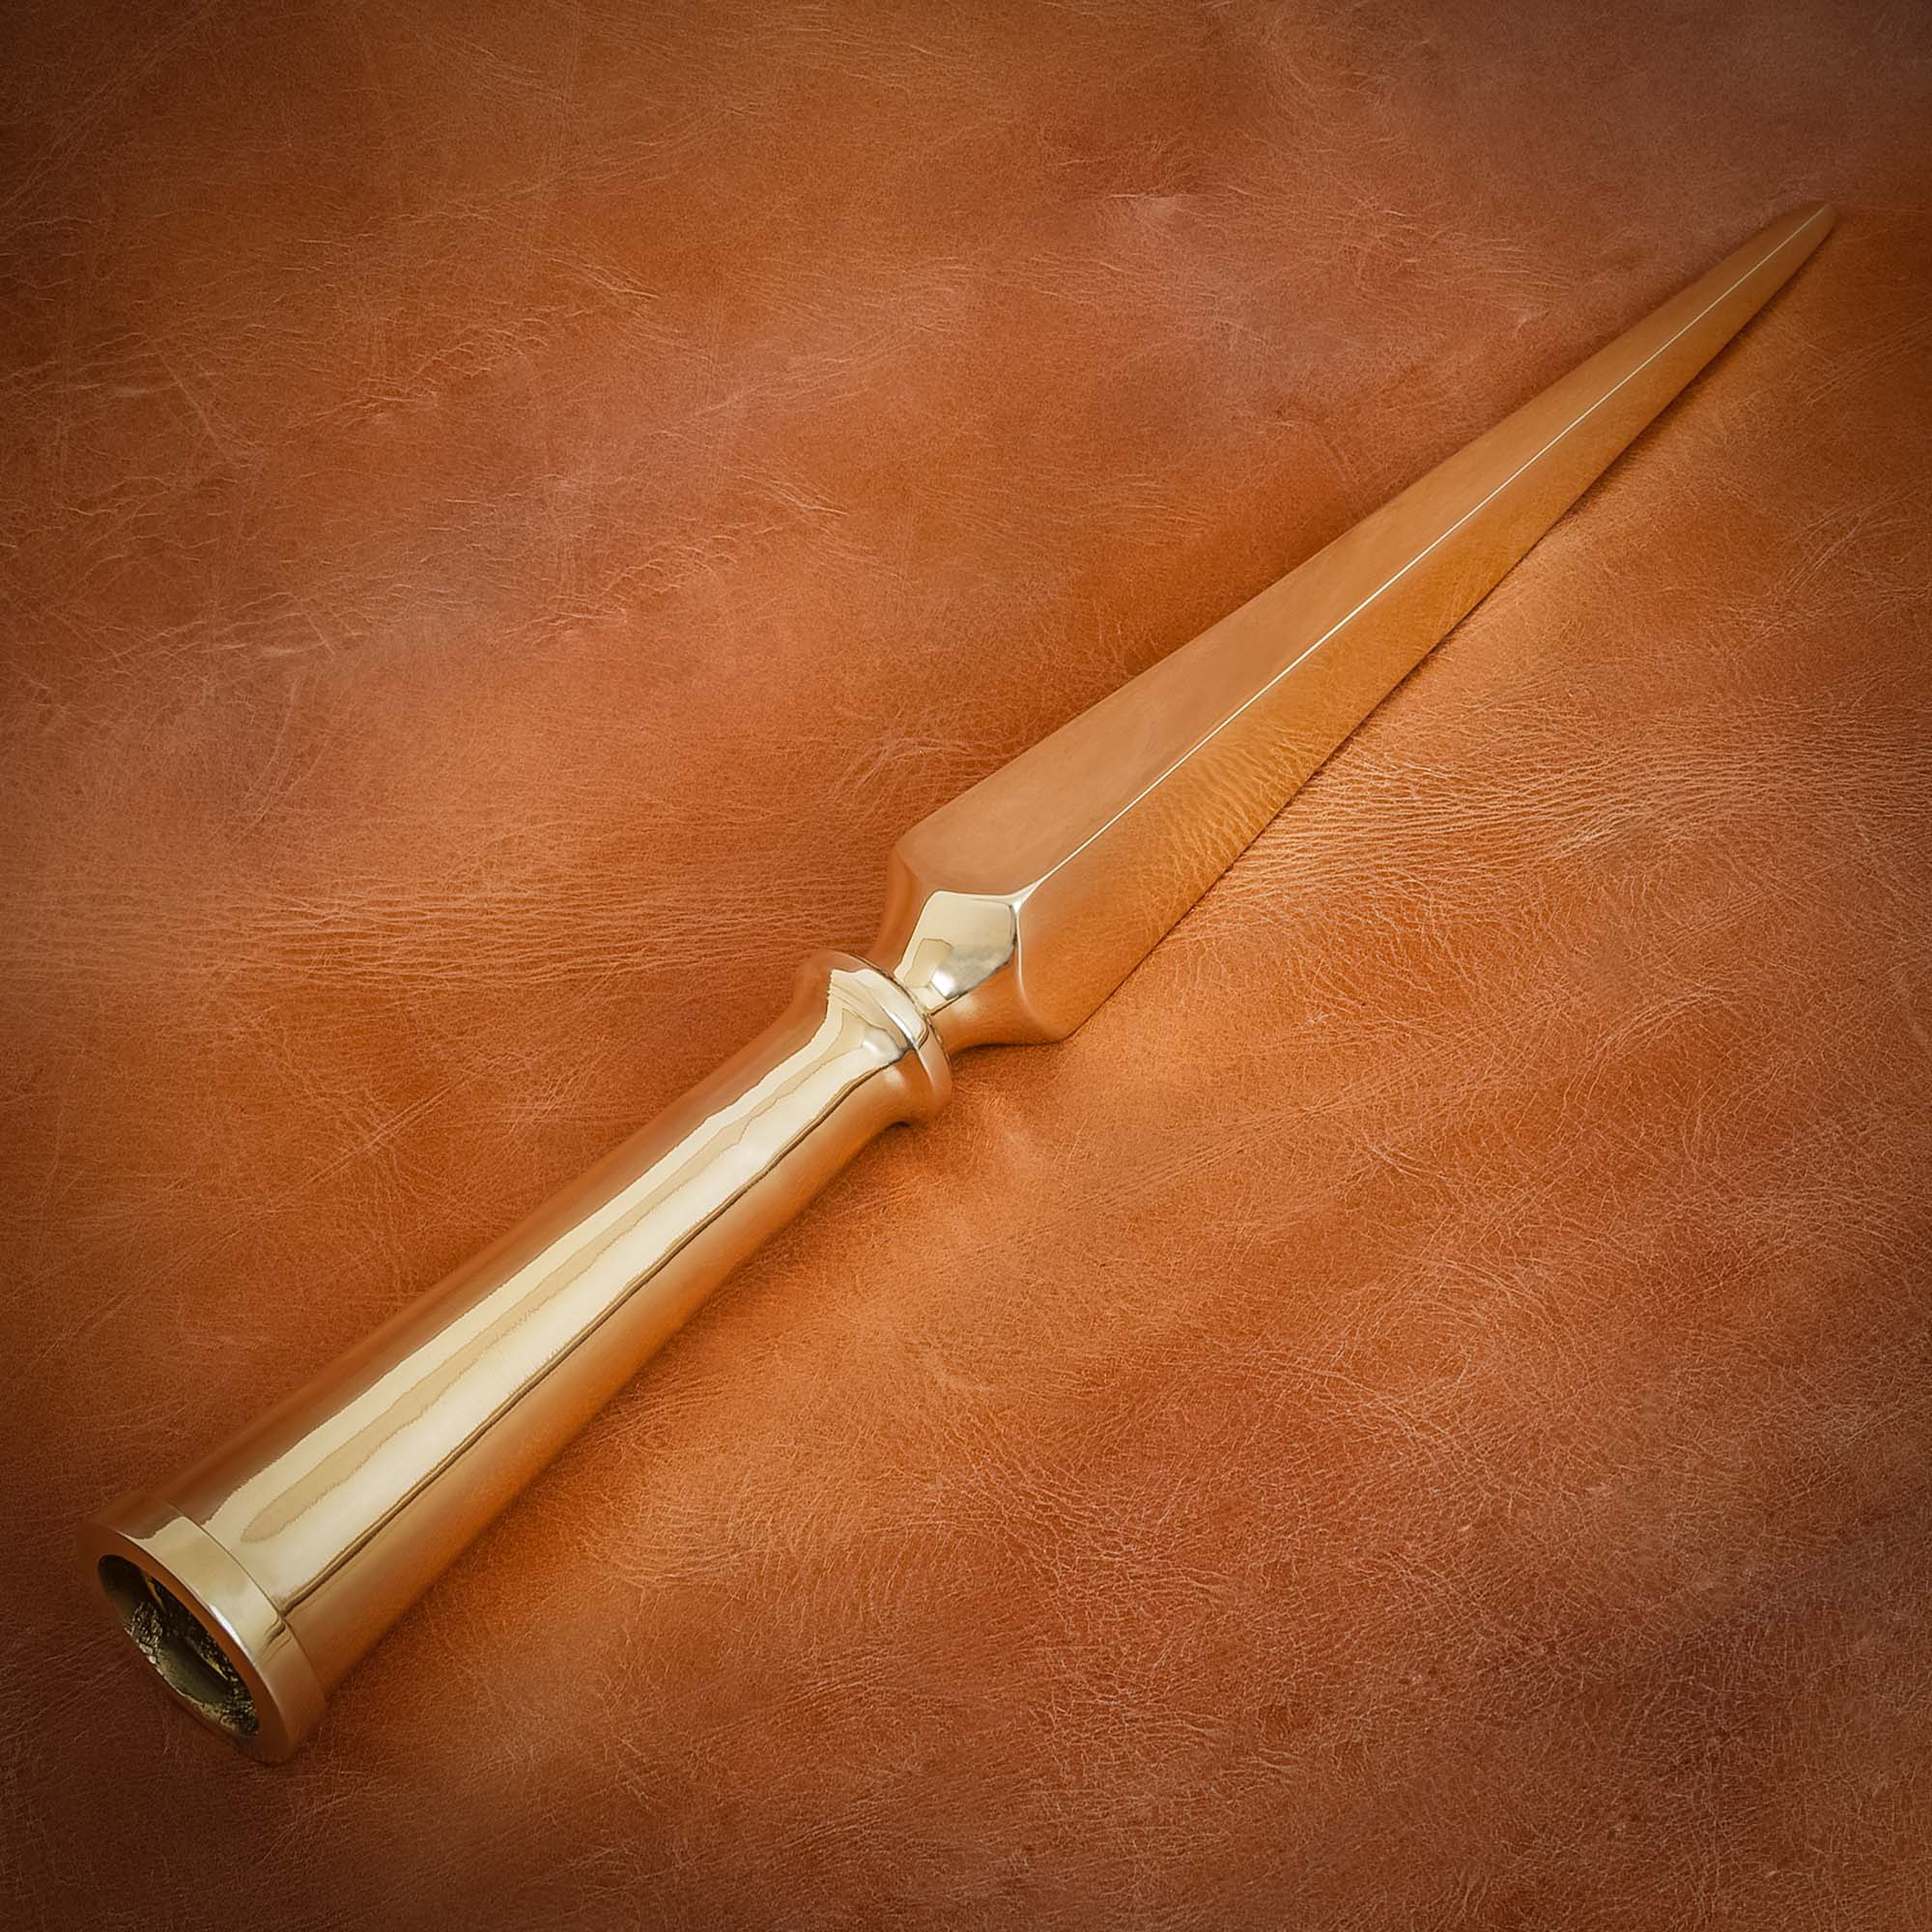 Roman Spear Butt Spike - Solid Brass